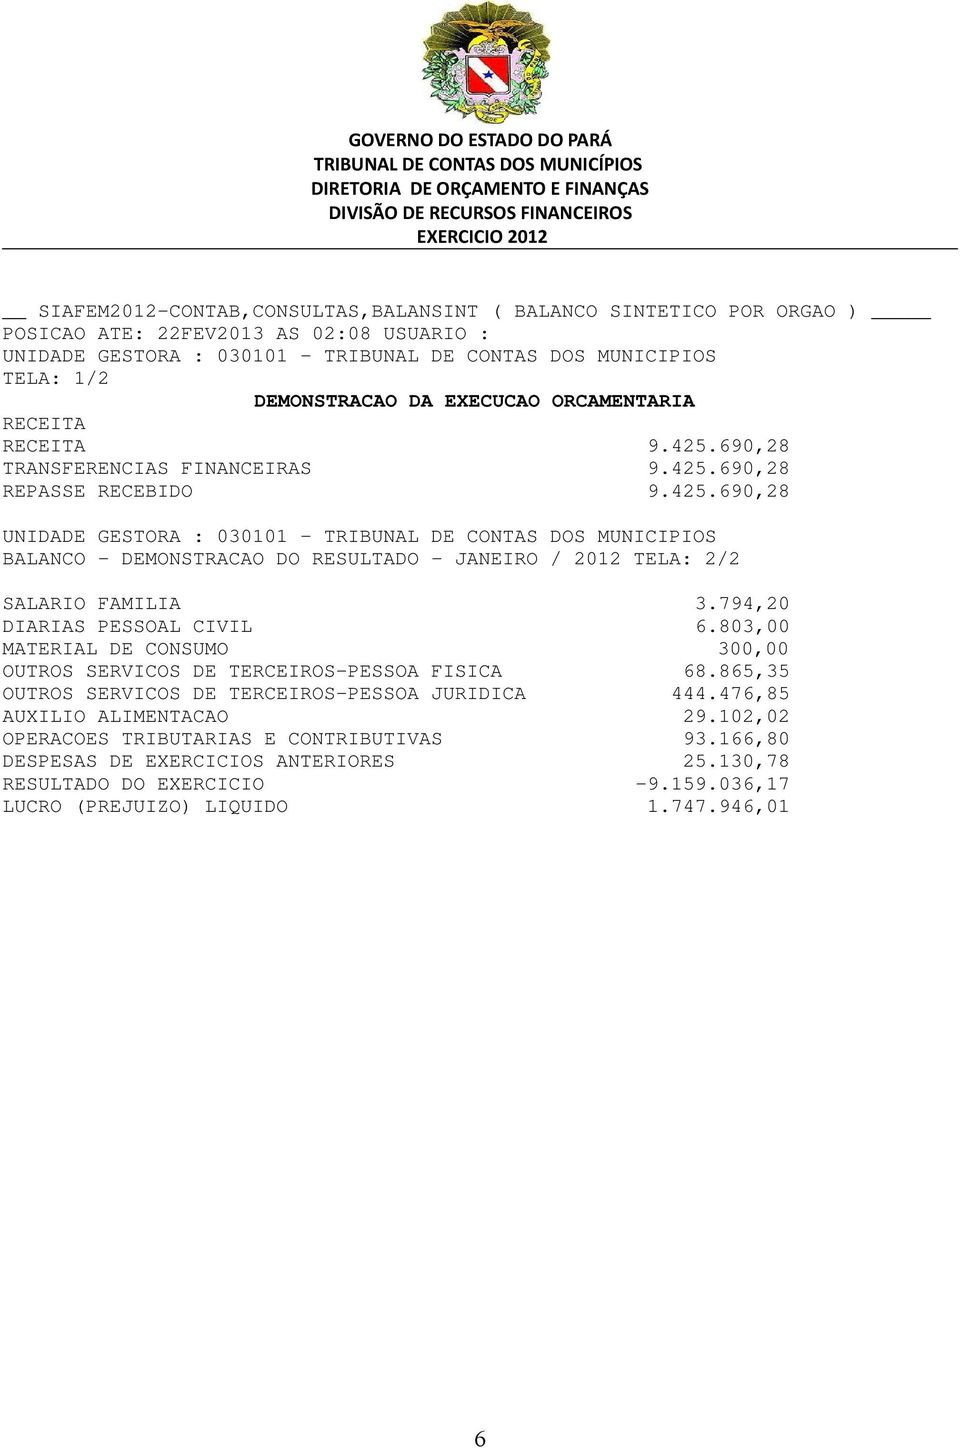 865,35 OUTROS SERVICOS DE TERCEIROS-PESSOA JURIDICA 444.476,85 AUXILIO ALIMENTACAO 29.102,02 OPERACOES TRIBUTARIAS E CONTRIBUTIVAS 93.